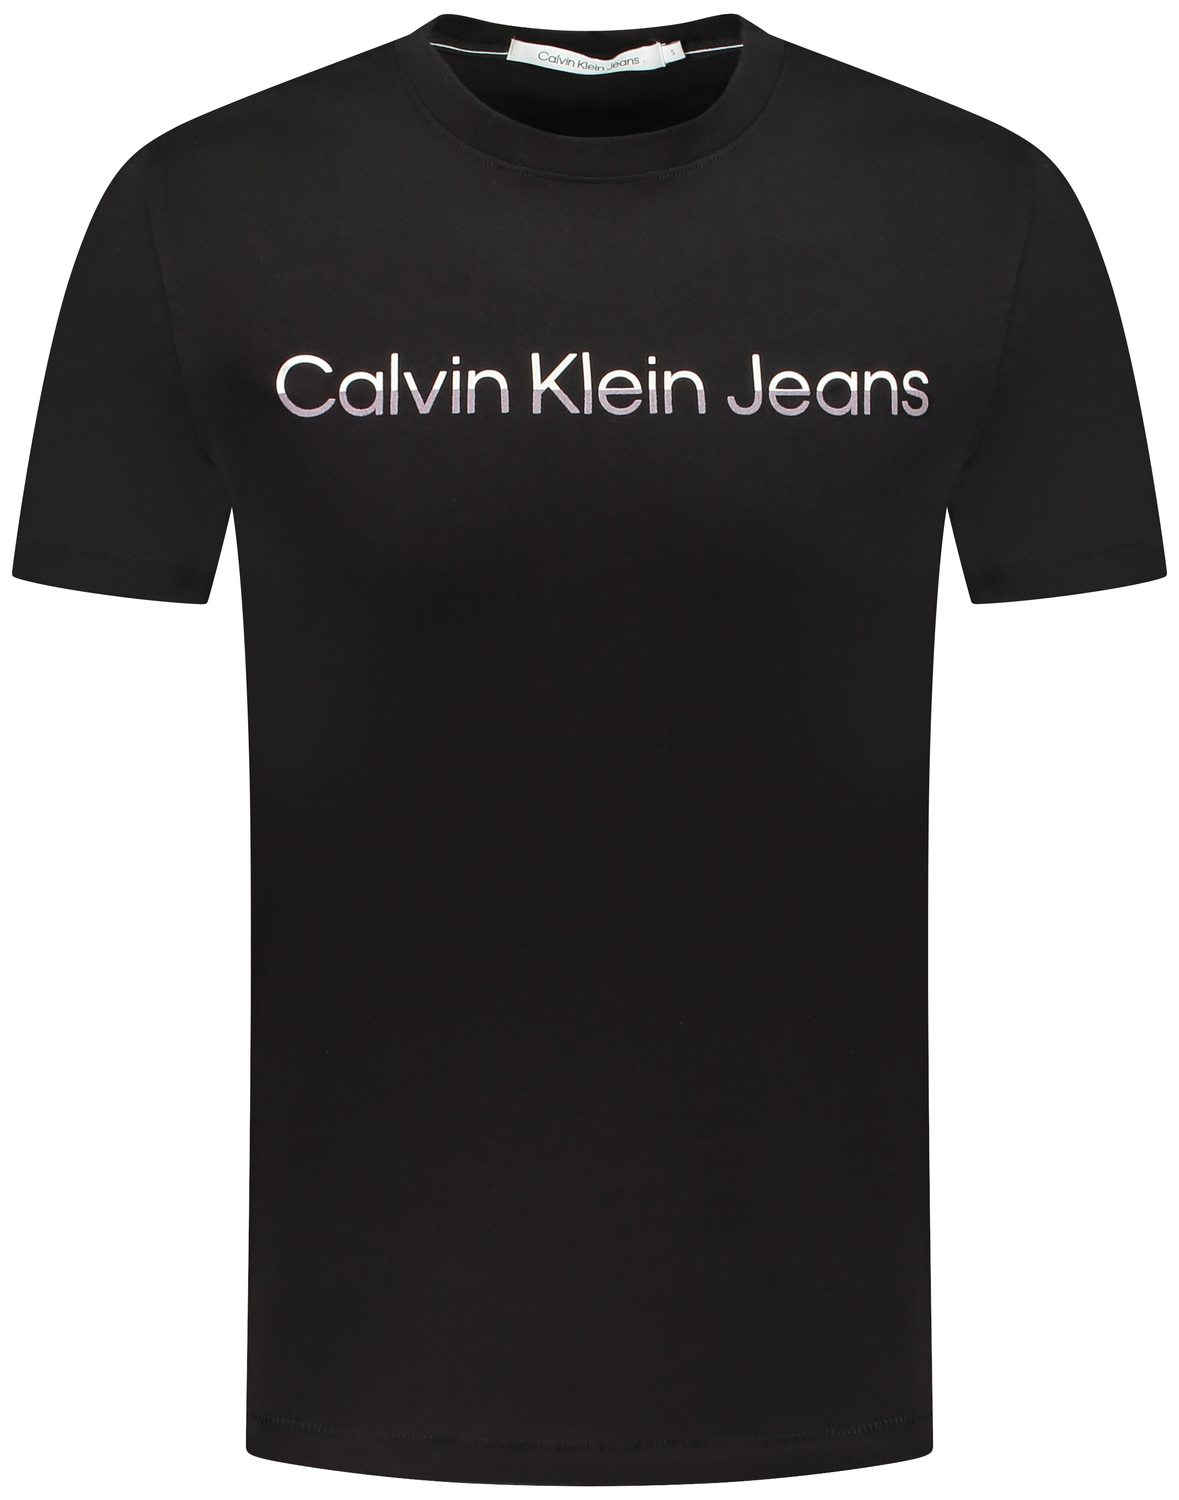 Zonnig kan niet zien Toepassen Calvin Klein Korte mouw t-shirt Zwart t-shirt km kopen | Hans voortman